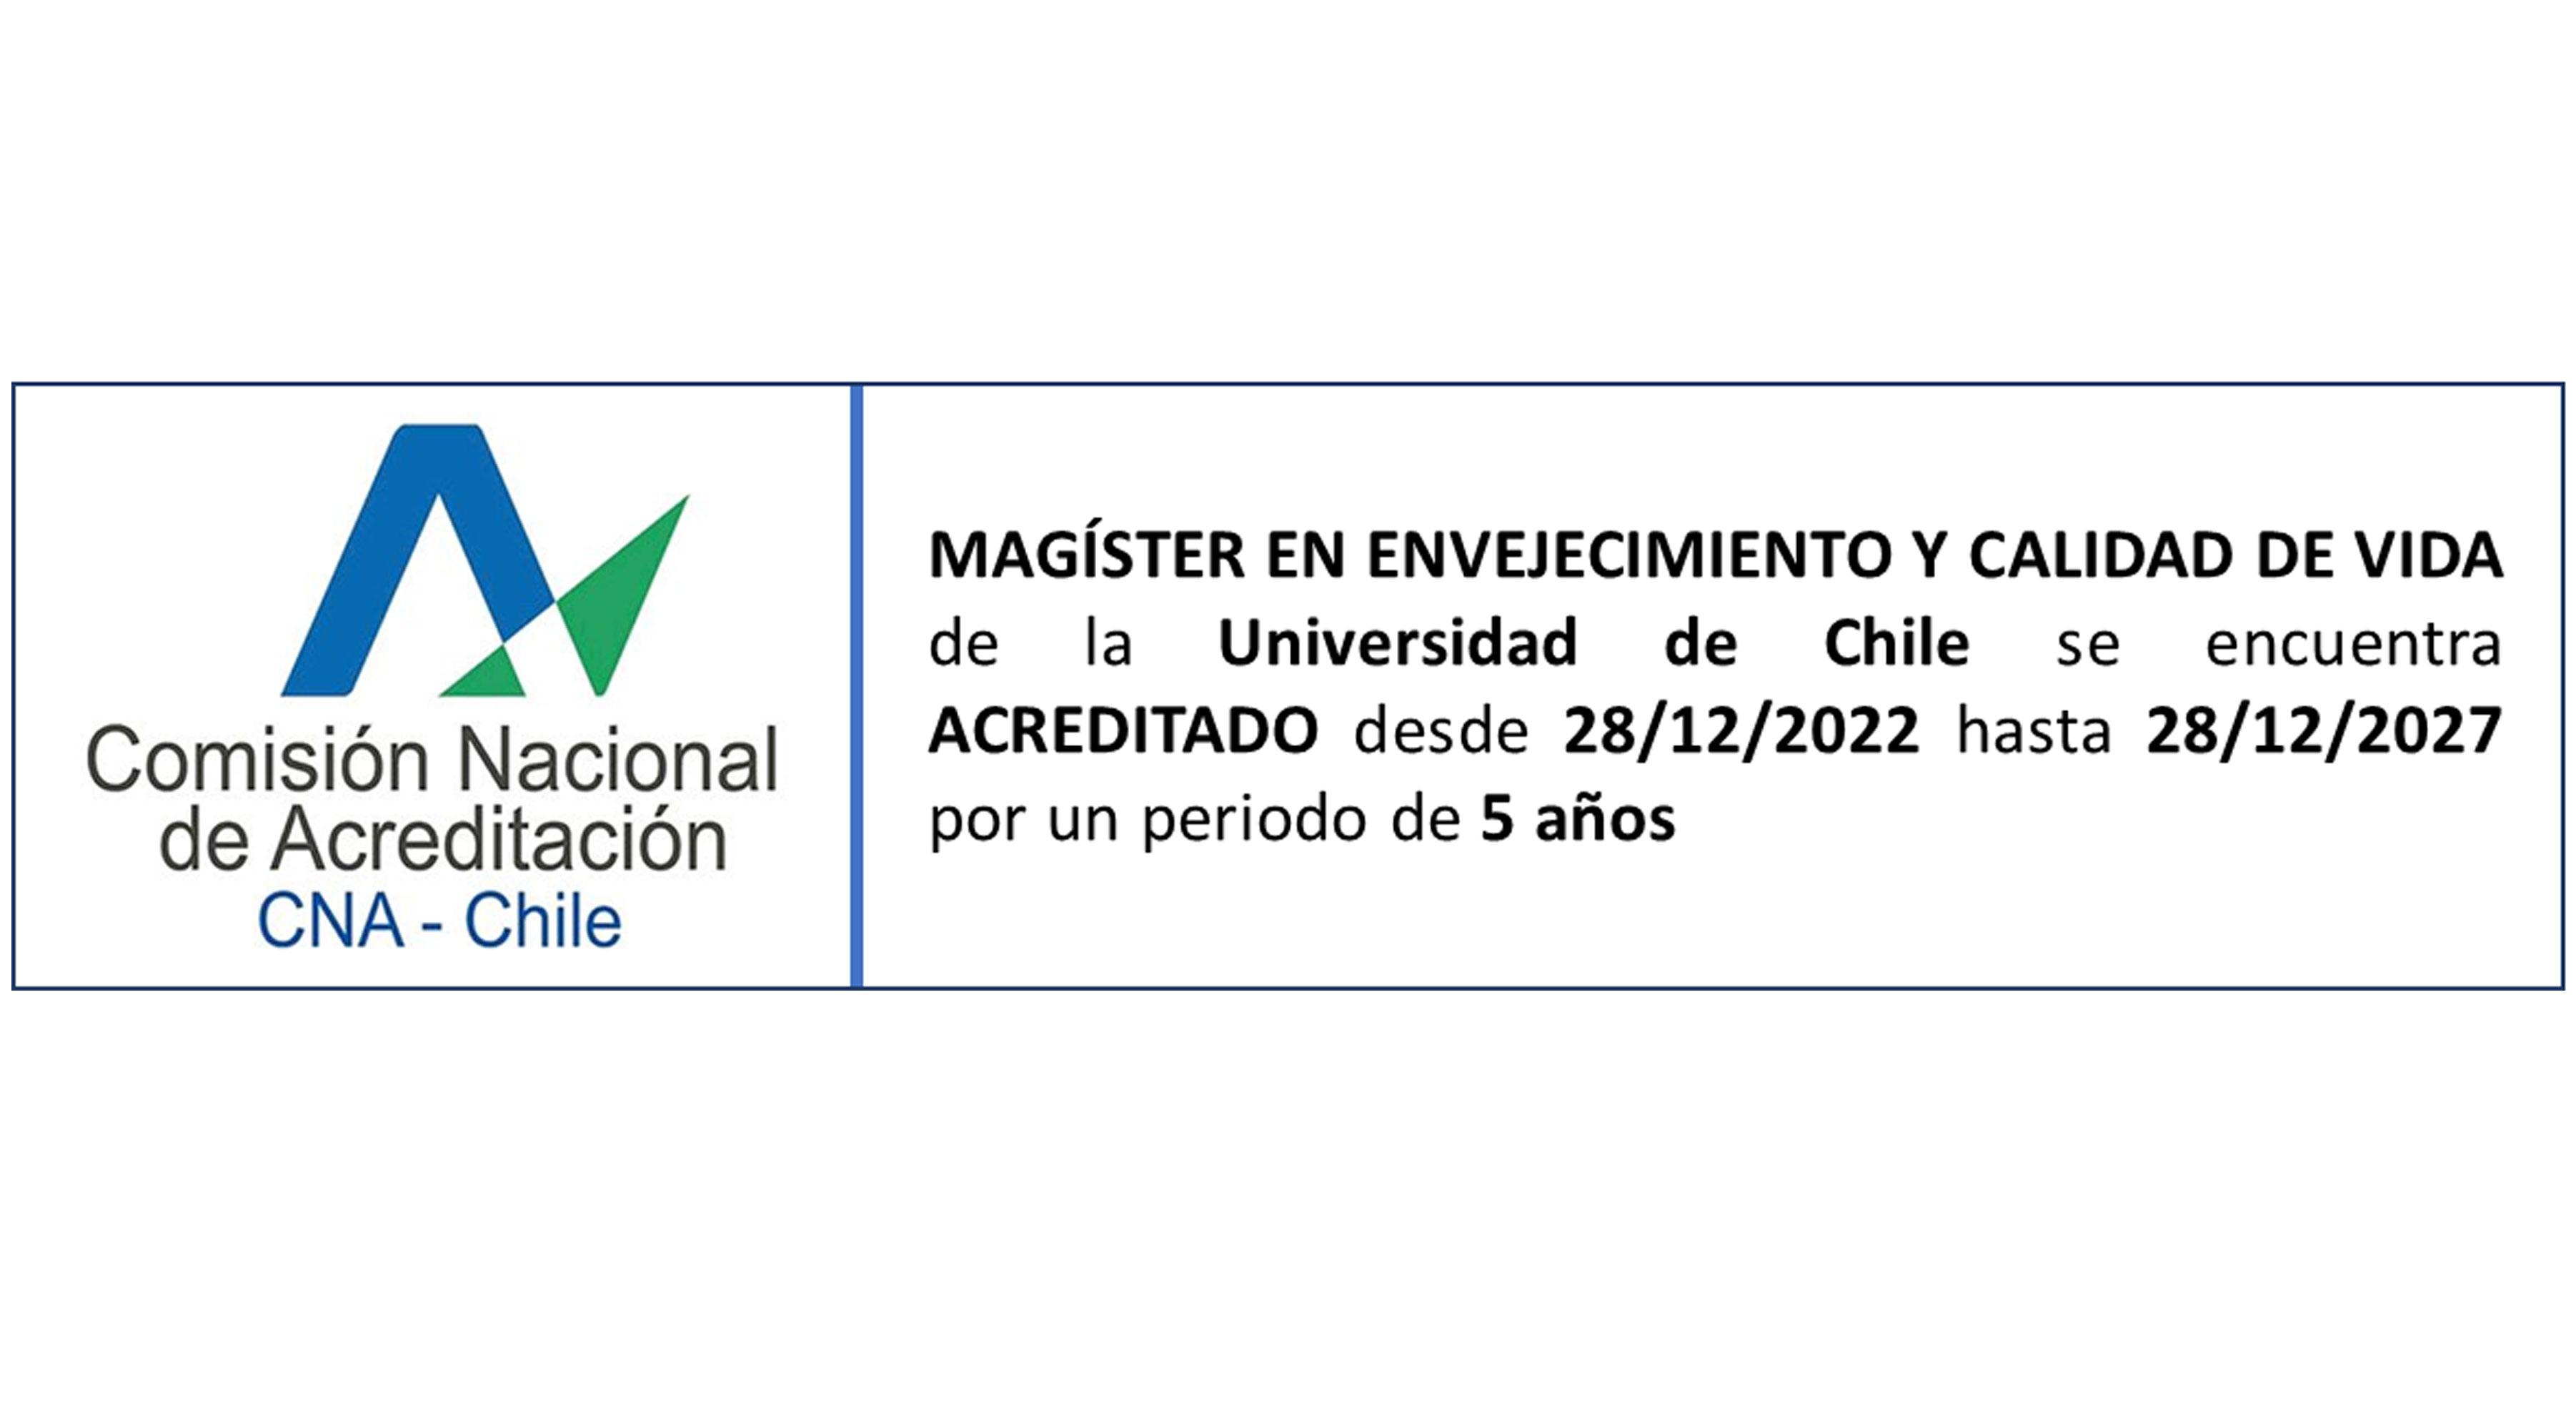  CNA-Chile acredita el  Magíster en Envejecimiento y Calidad de Vida del 28/12/2022 al 28/12/2027.